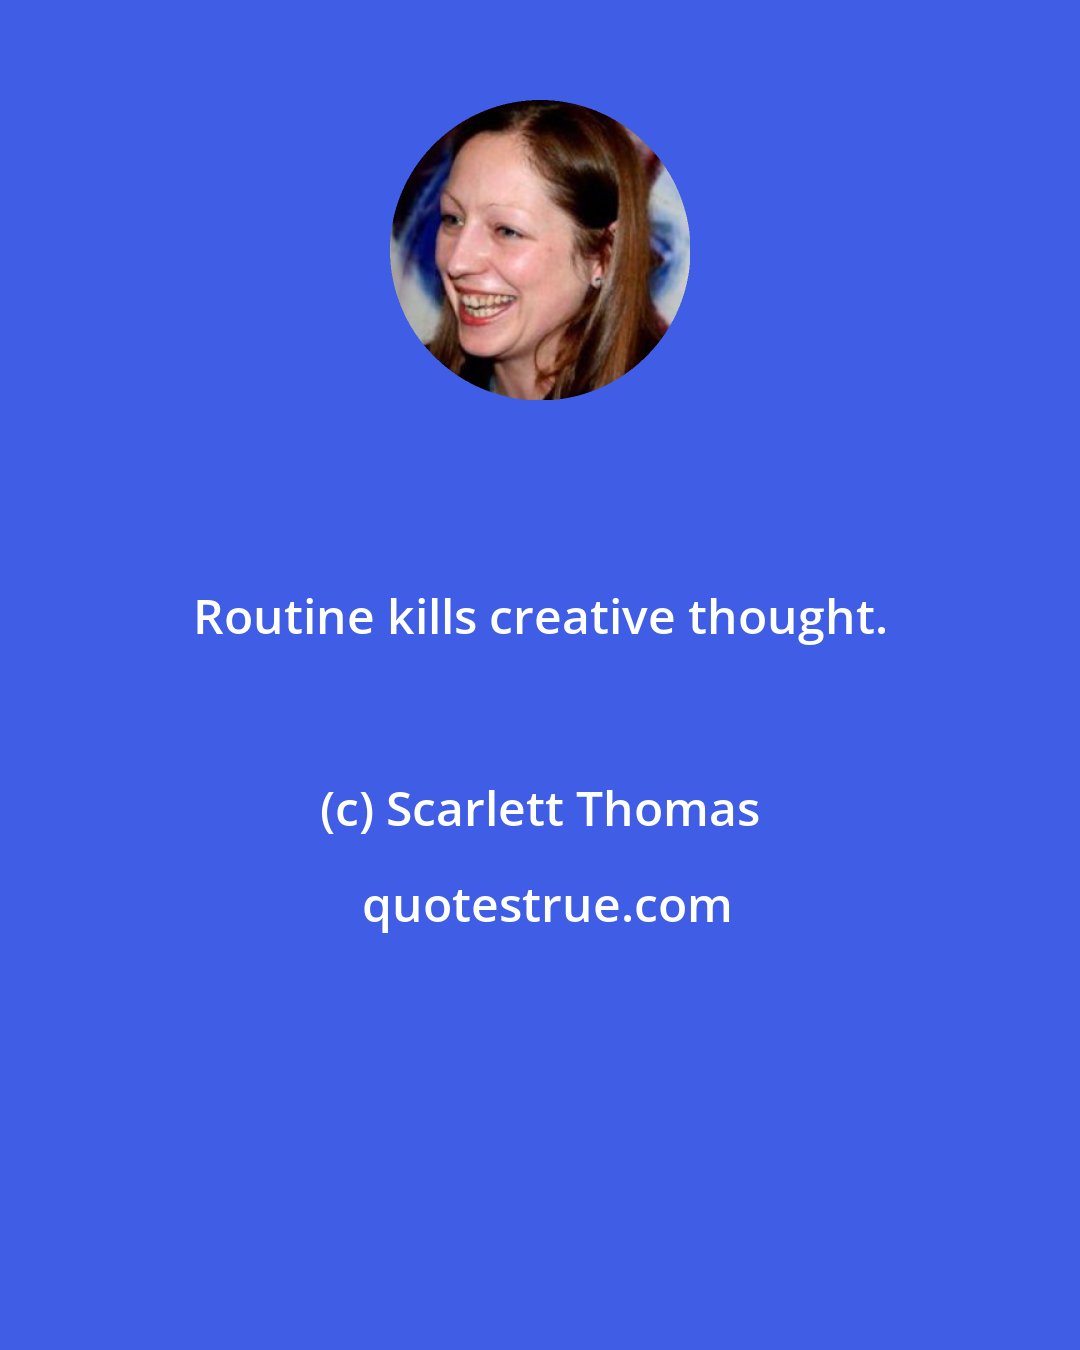 Scarlett Thomas: Routine kills creative thought.